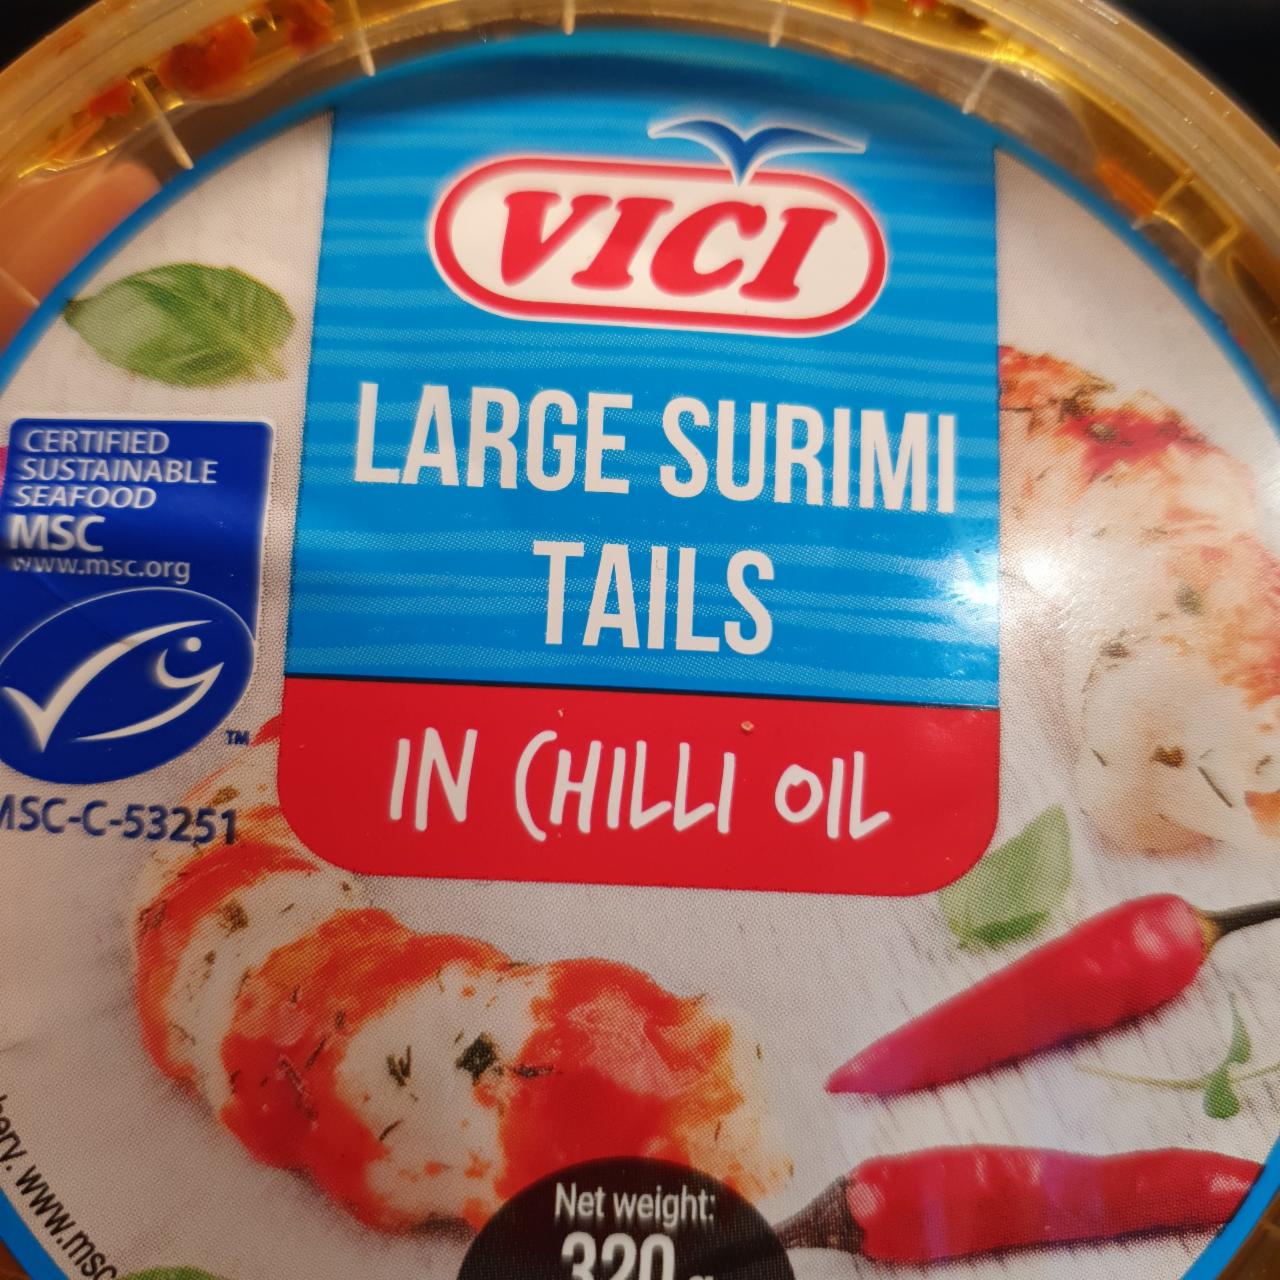 Fotografie - Large surimi tails in chilli oil Vici